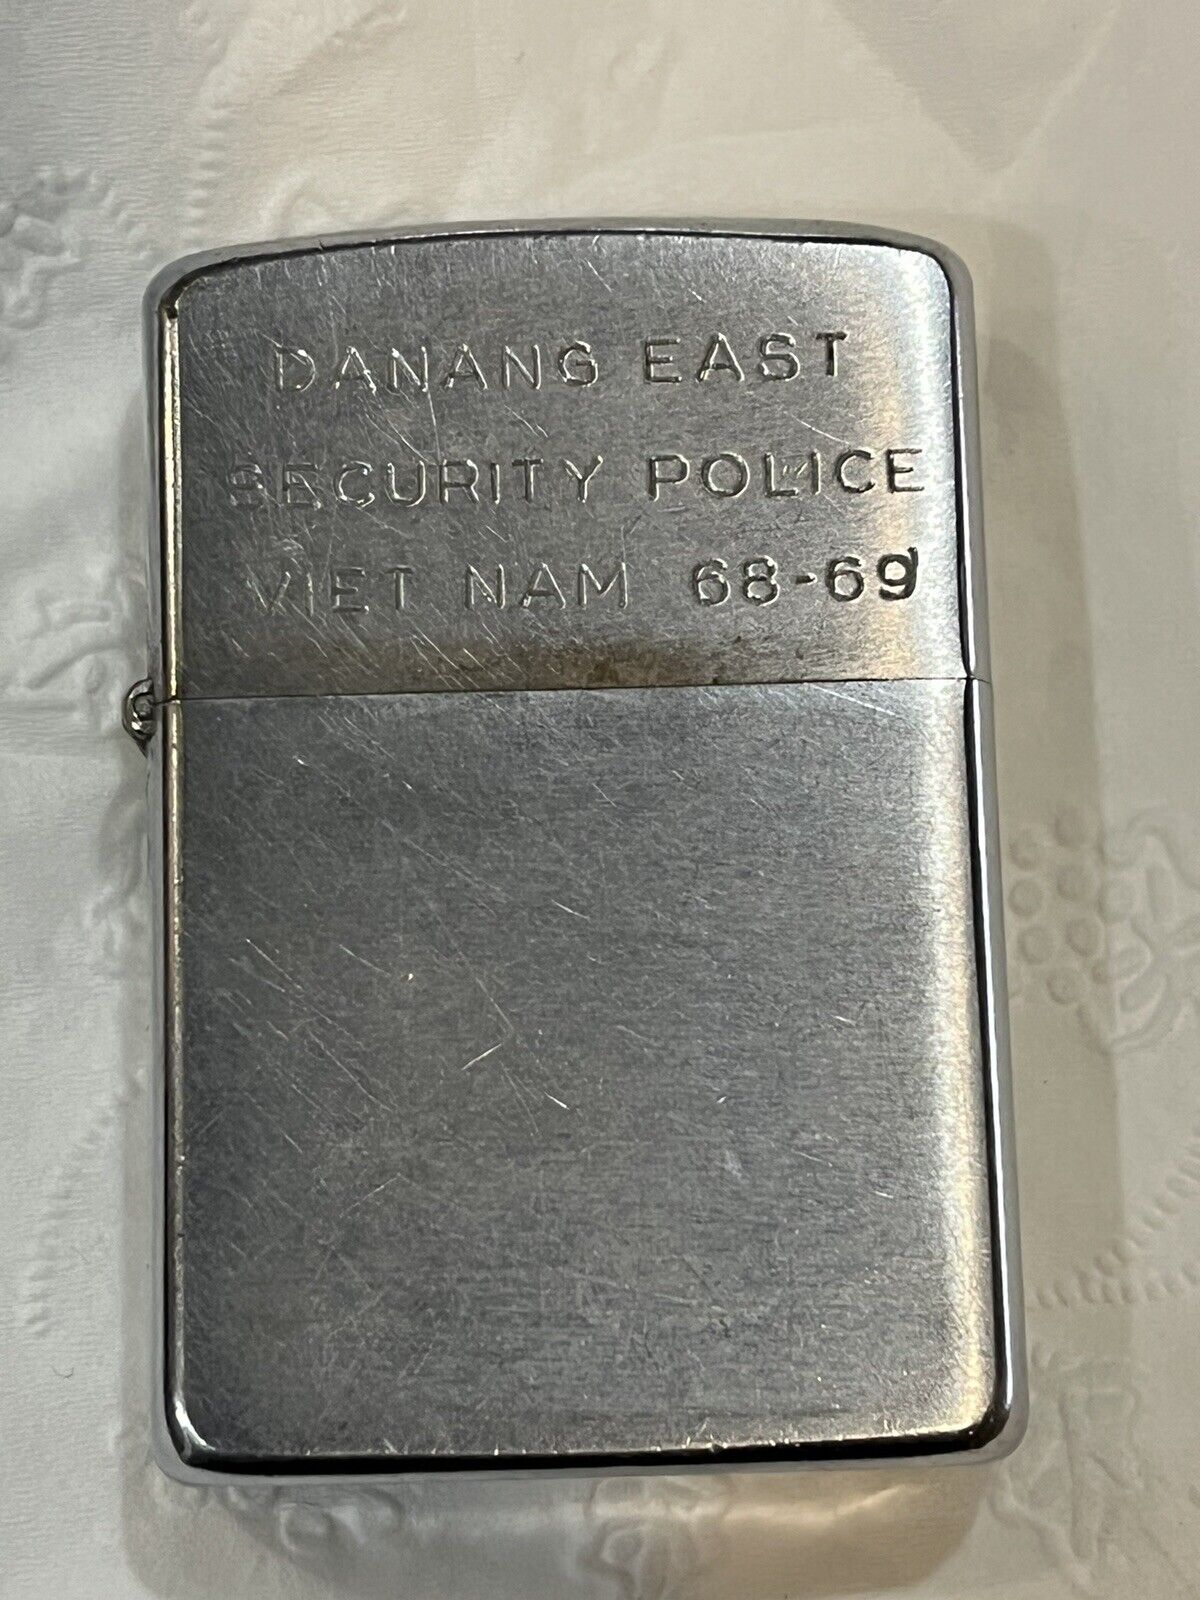 ZIPPO 1968 VIETNAM DANANG EAST SECURITY POLICE LIGHTER